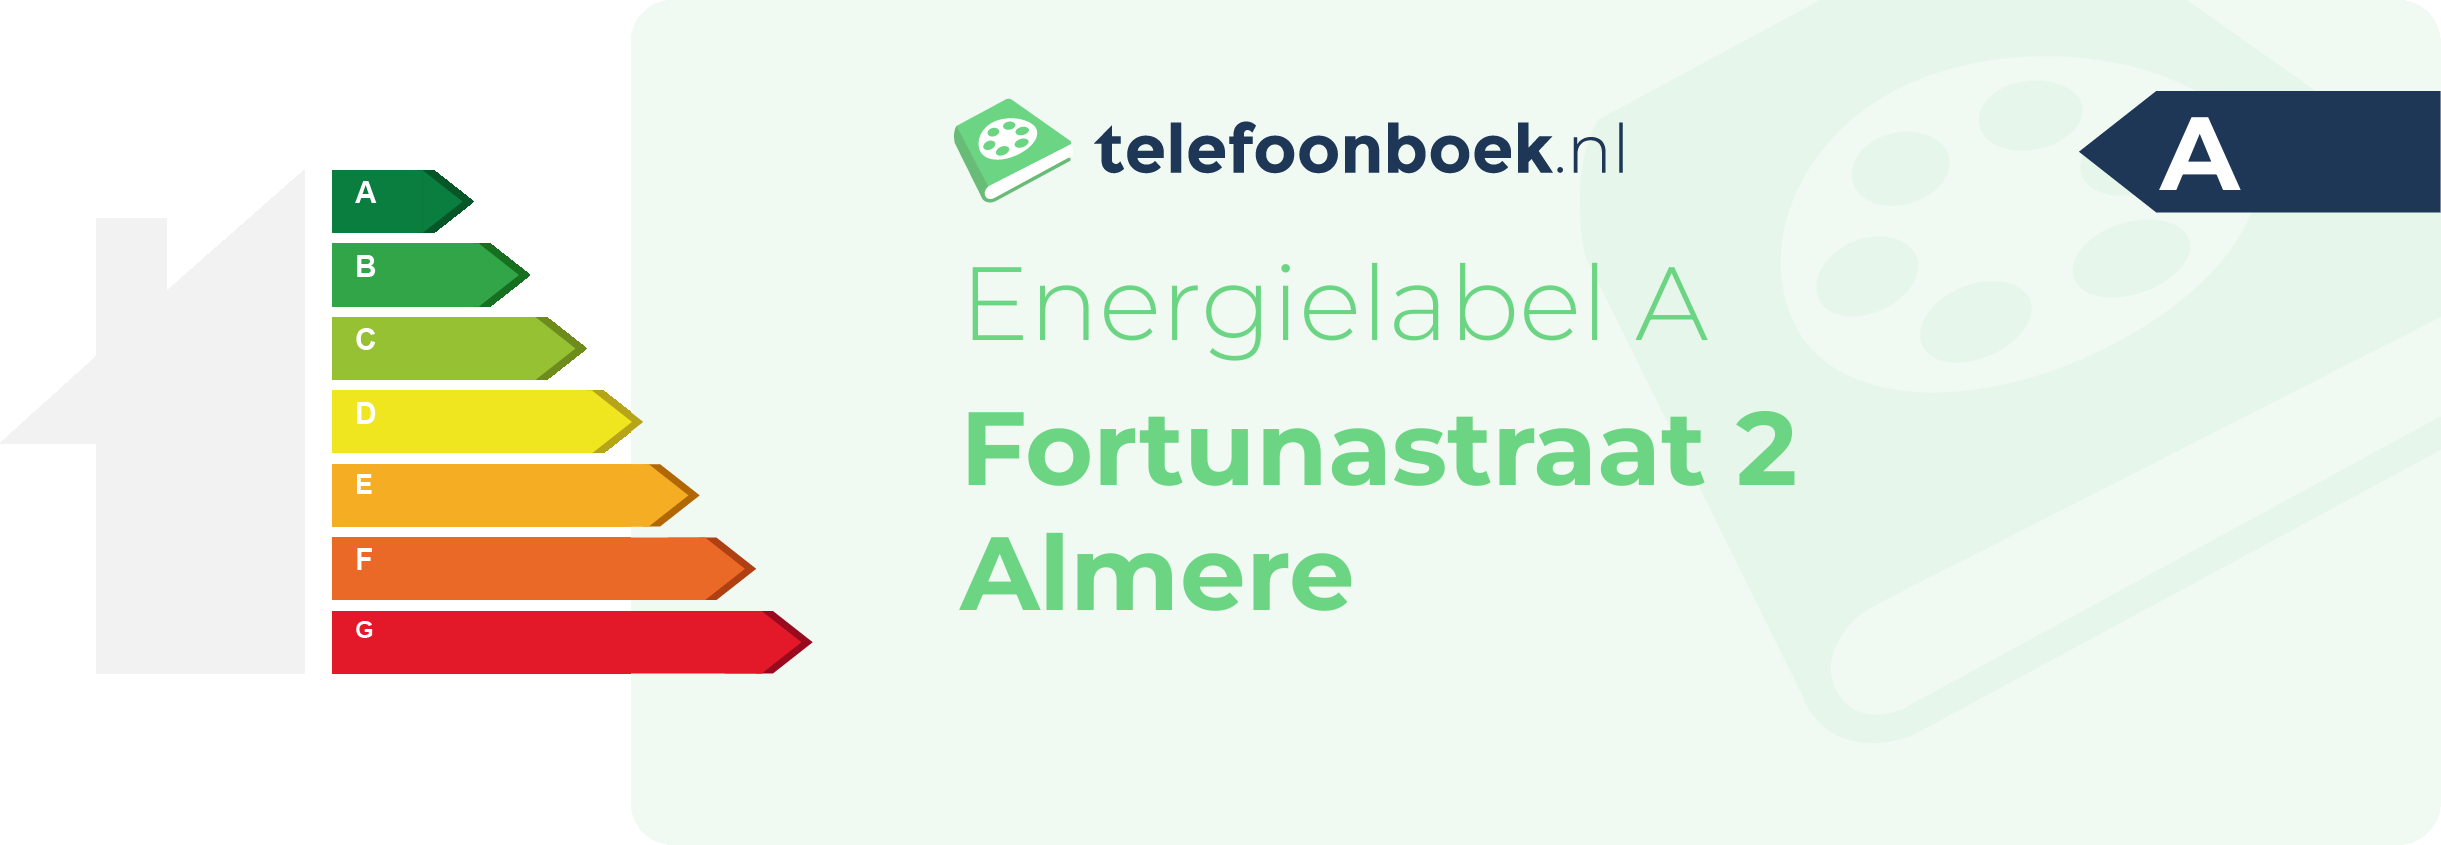 Energielabel Fortunastraat 2 Almere